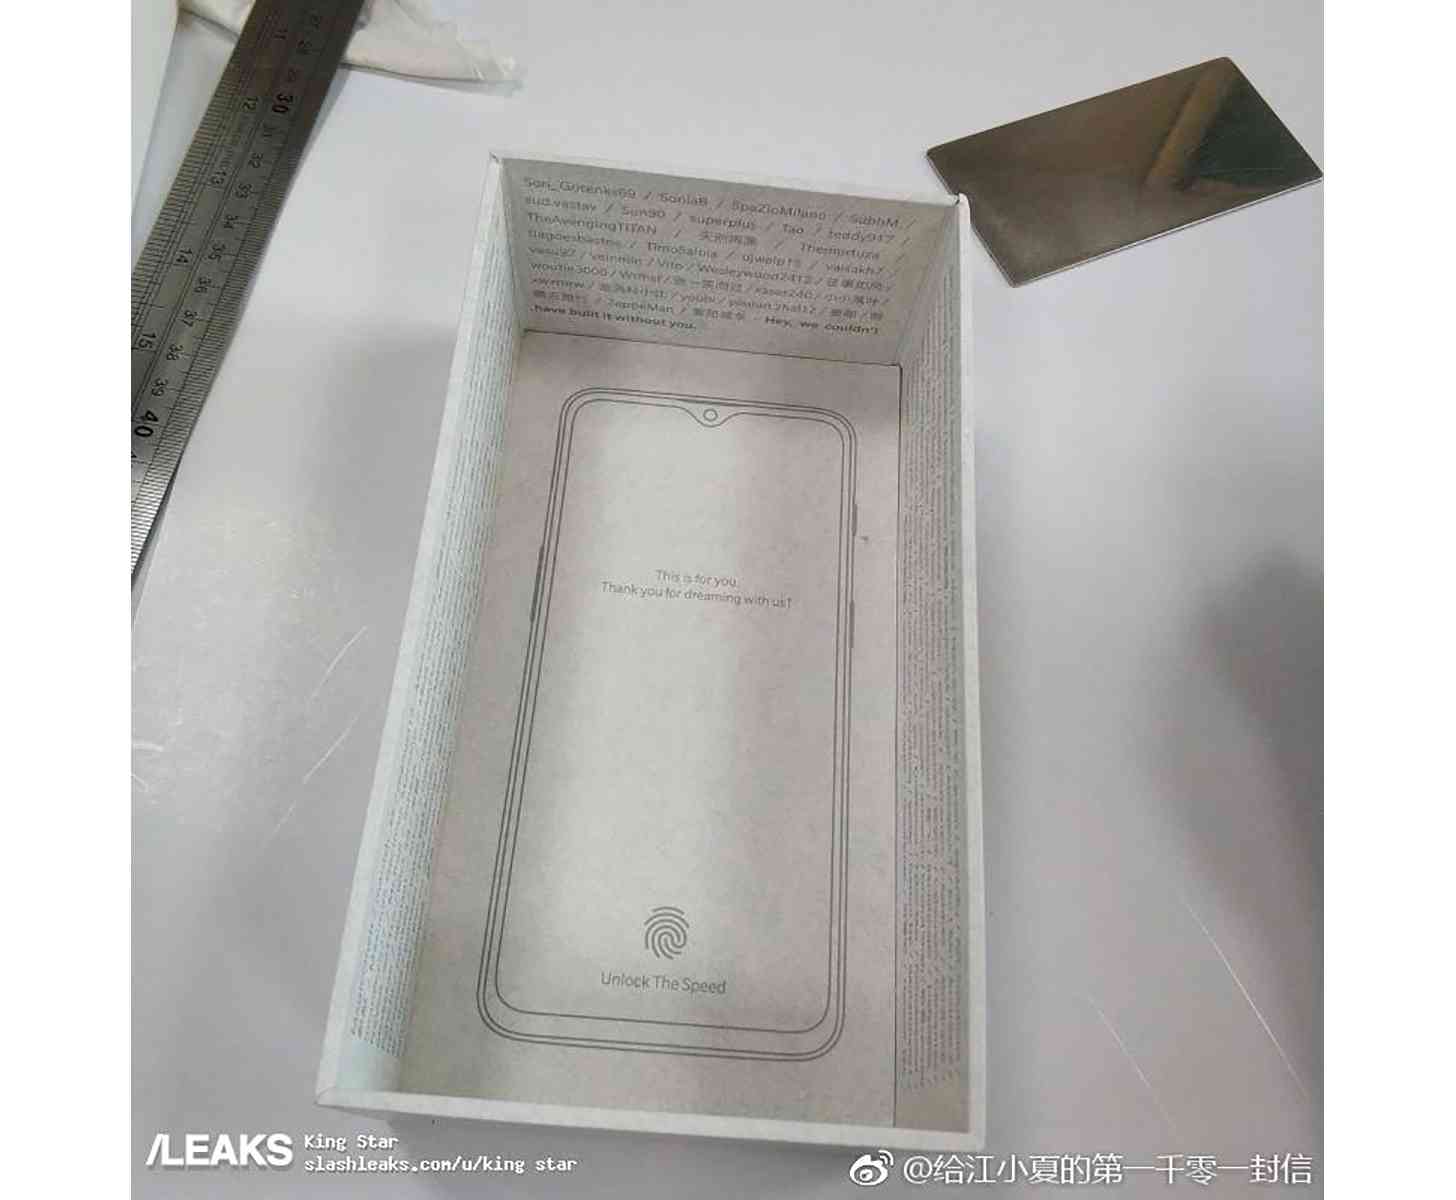 OnePlus 6T packaging leak